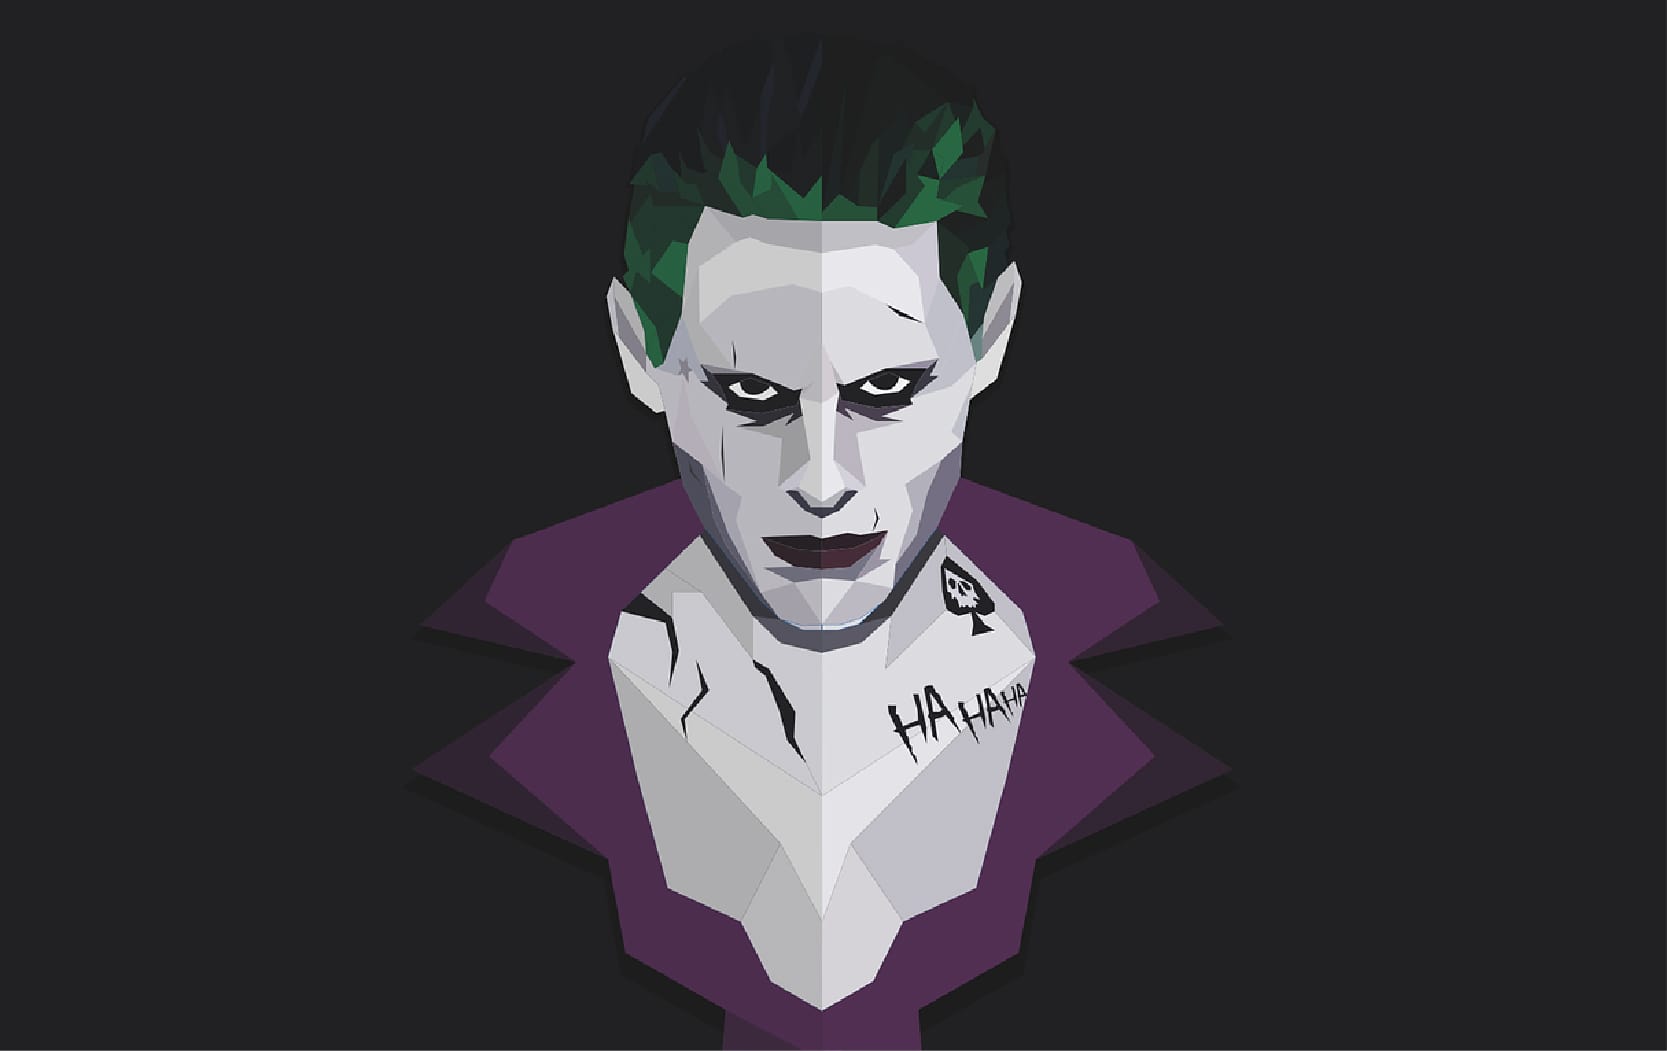 Papel de parede e Wallpaper do Joker em 4K